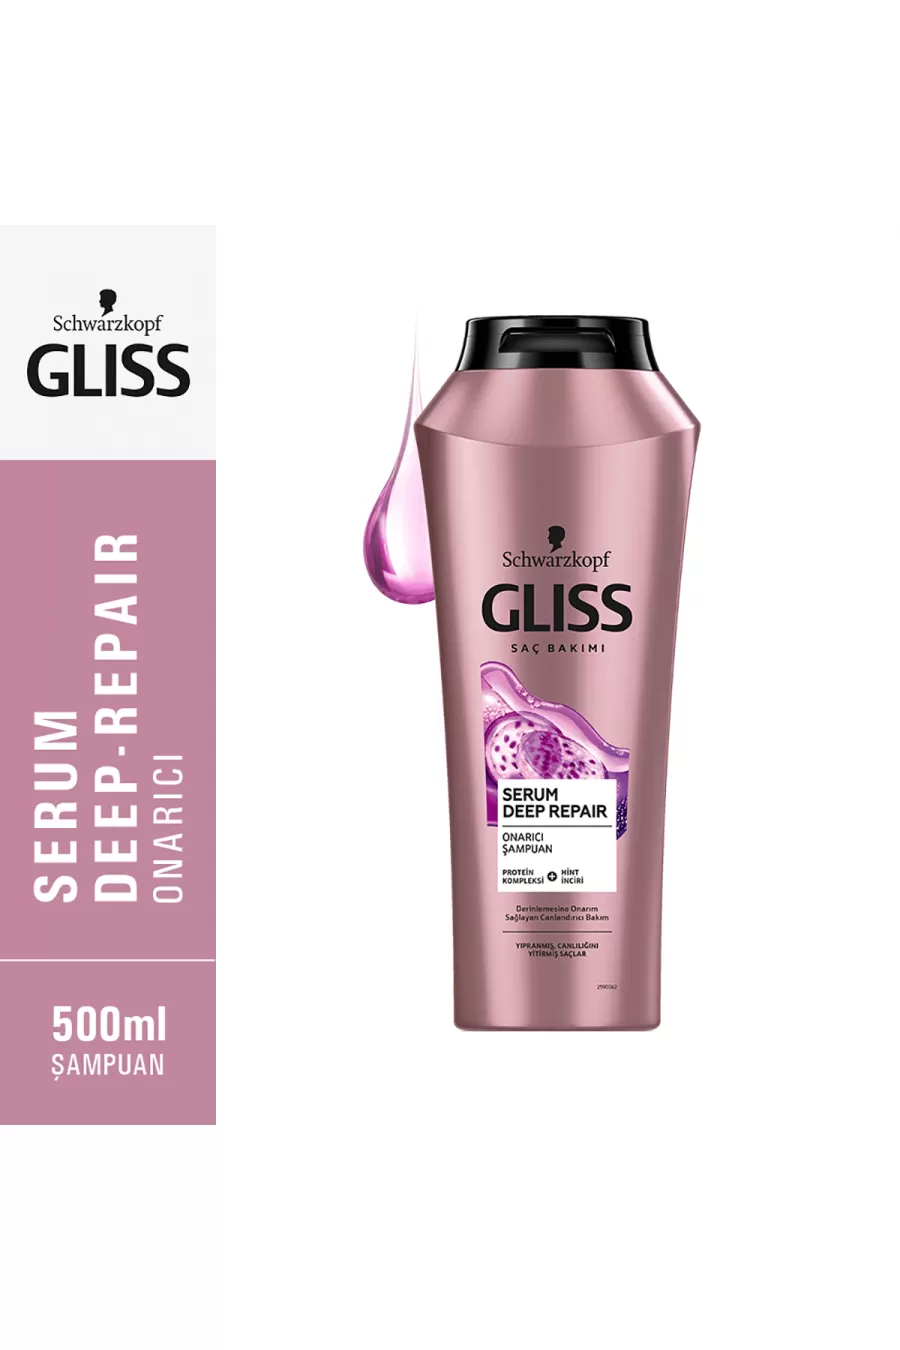 لطیف کننده مو مانند ابریشم ترمیم کننده قوی مو گلیس GLISS شامپو پروتئینه